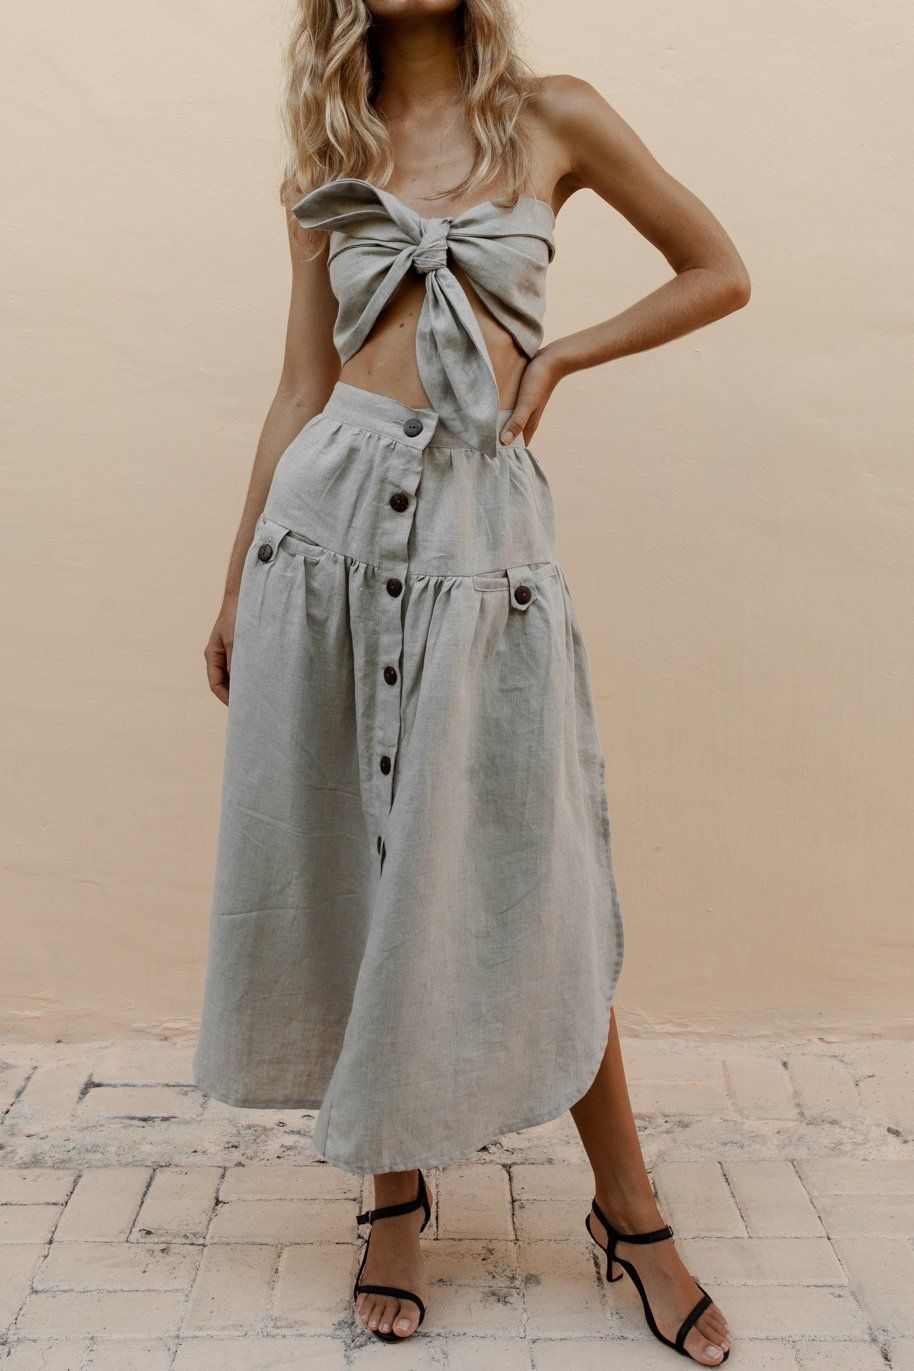 NTG Fad Skirt Grey / S New Arrival Cotton Linen Pocket Slit Skirt-(Hand Made)